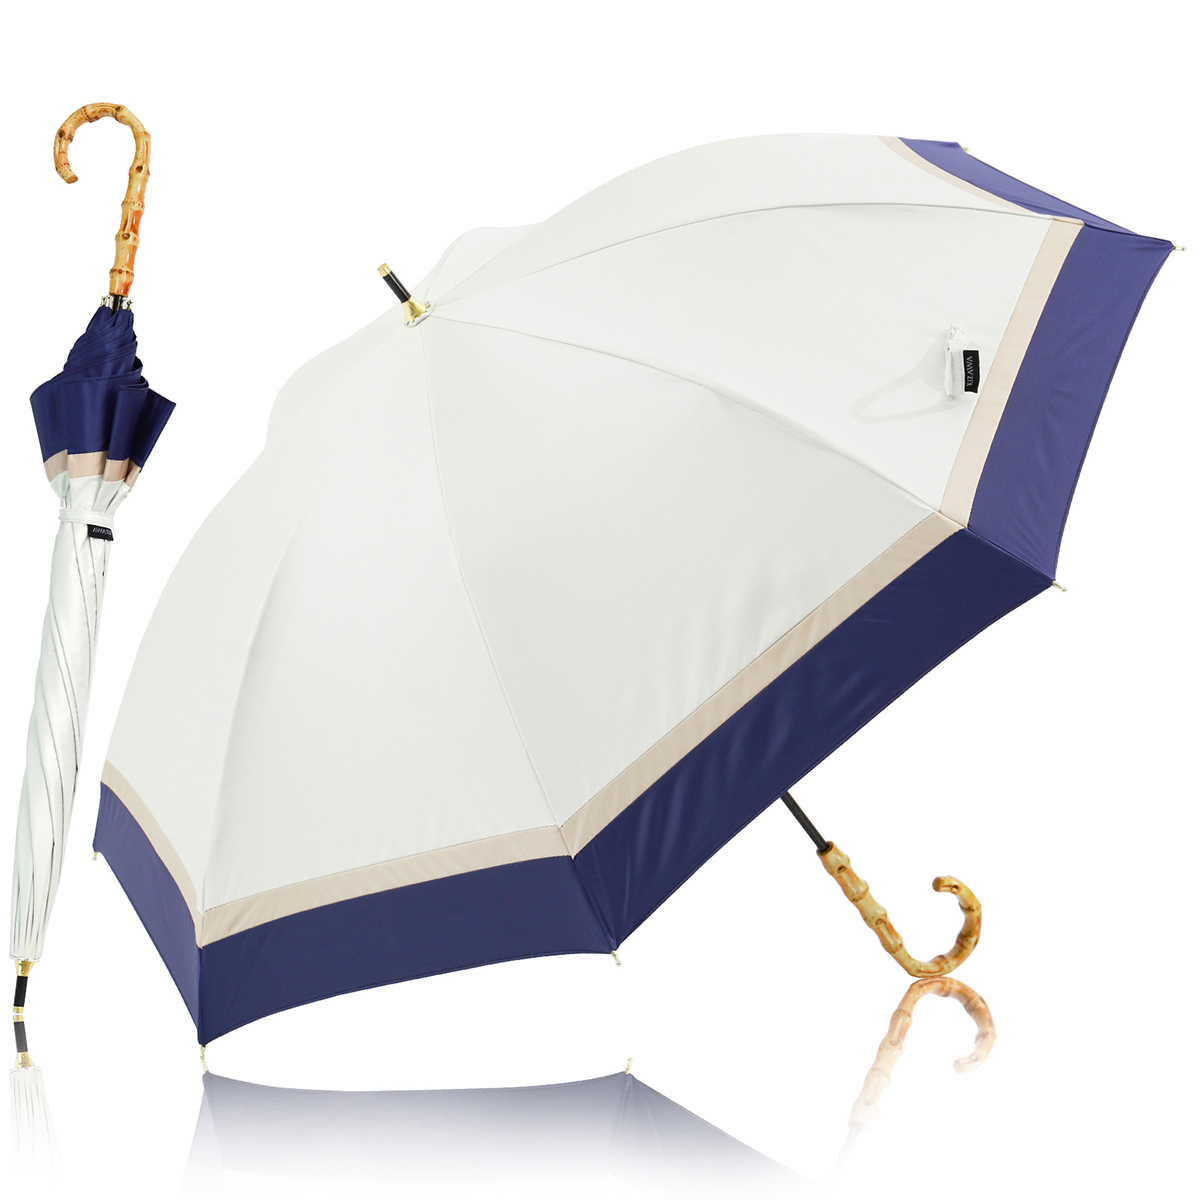 日傘 完全遮光 長傘 UVカット 100%遮光 紫外線対策 軽量 熱中症対策 晴雨兼用 大きい バン...